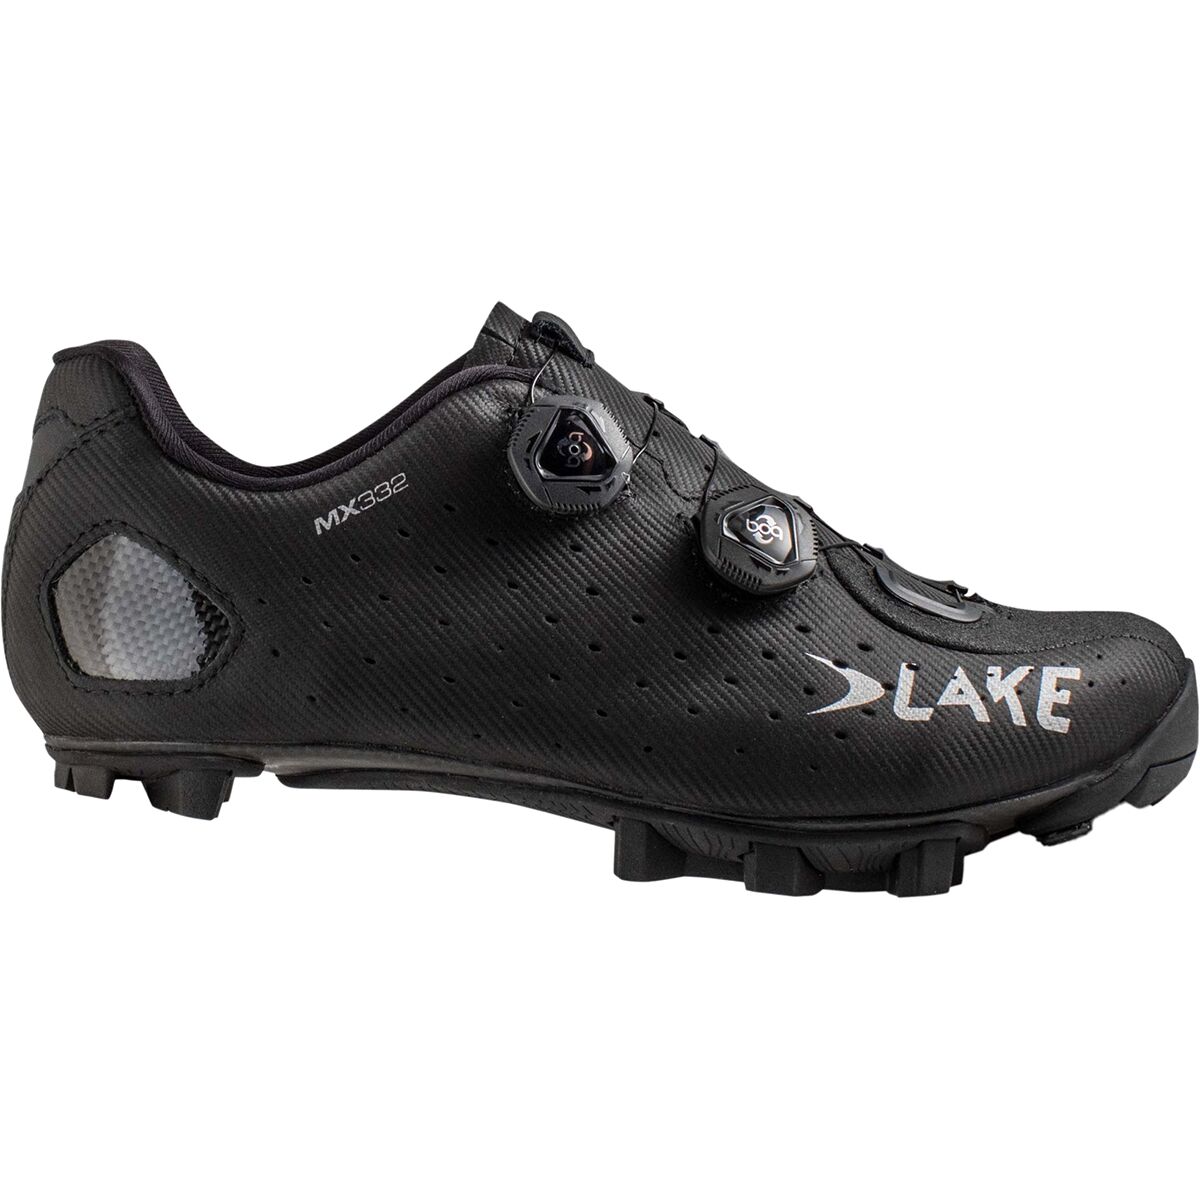 Lake MX332 Wide Mountain Bike Shoe - Men's